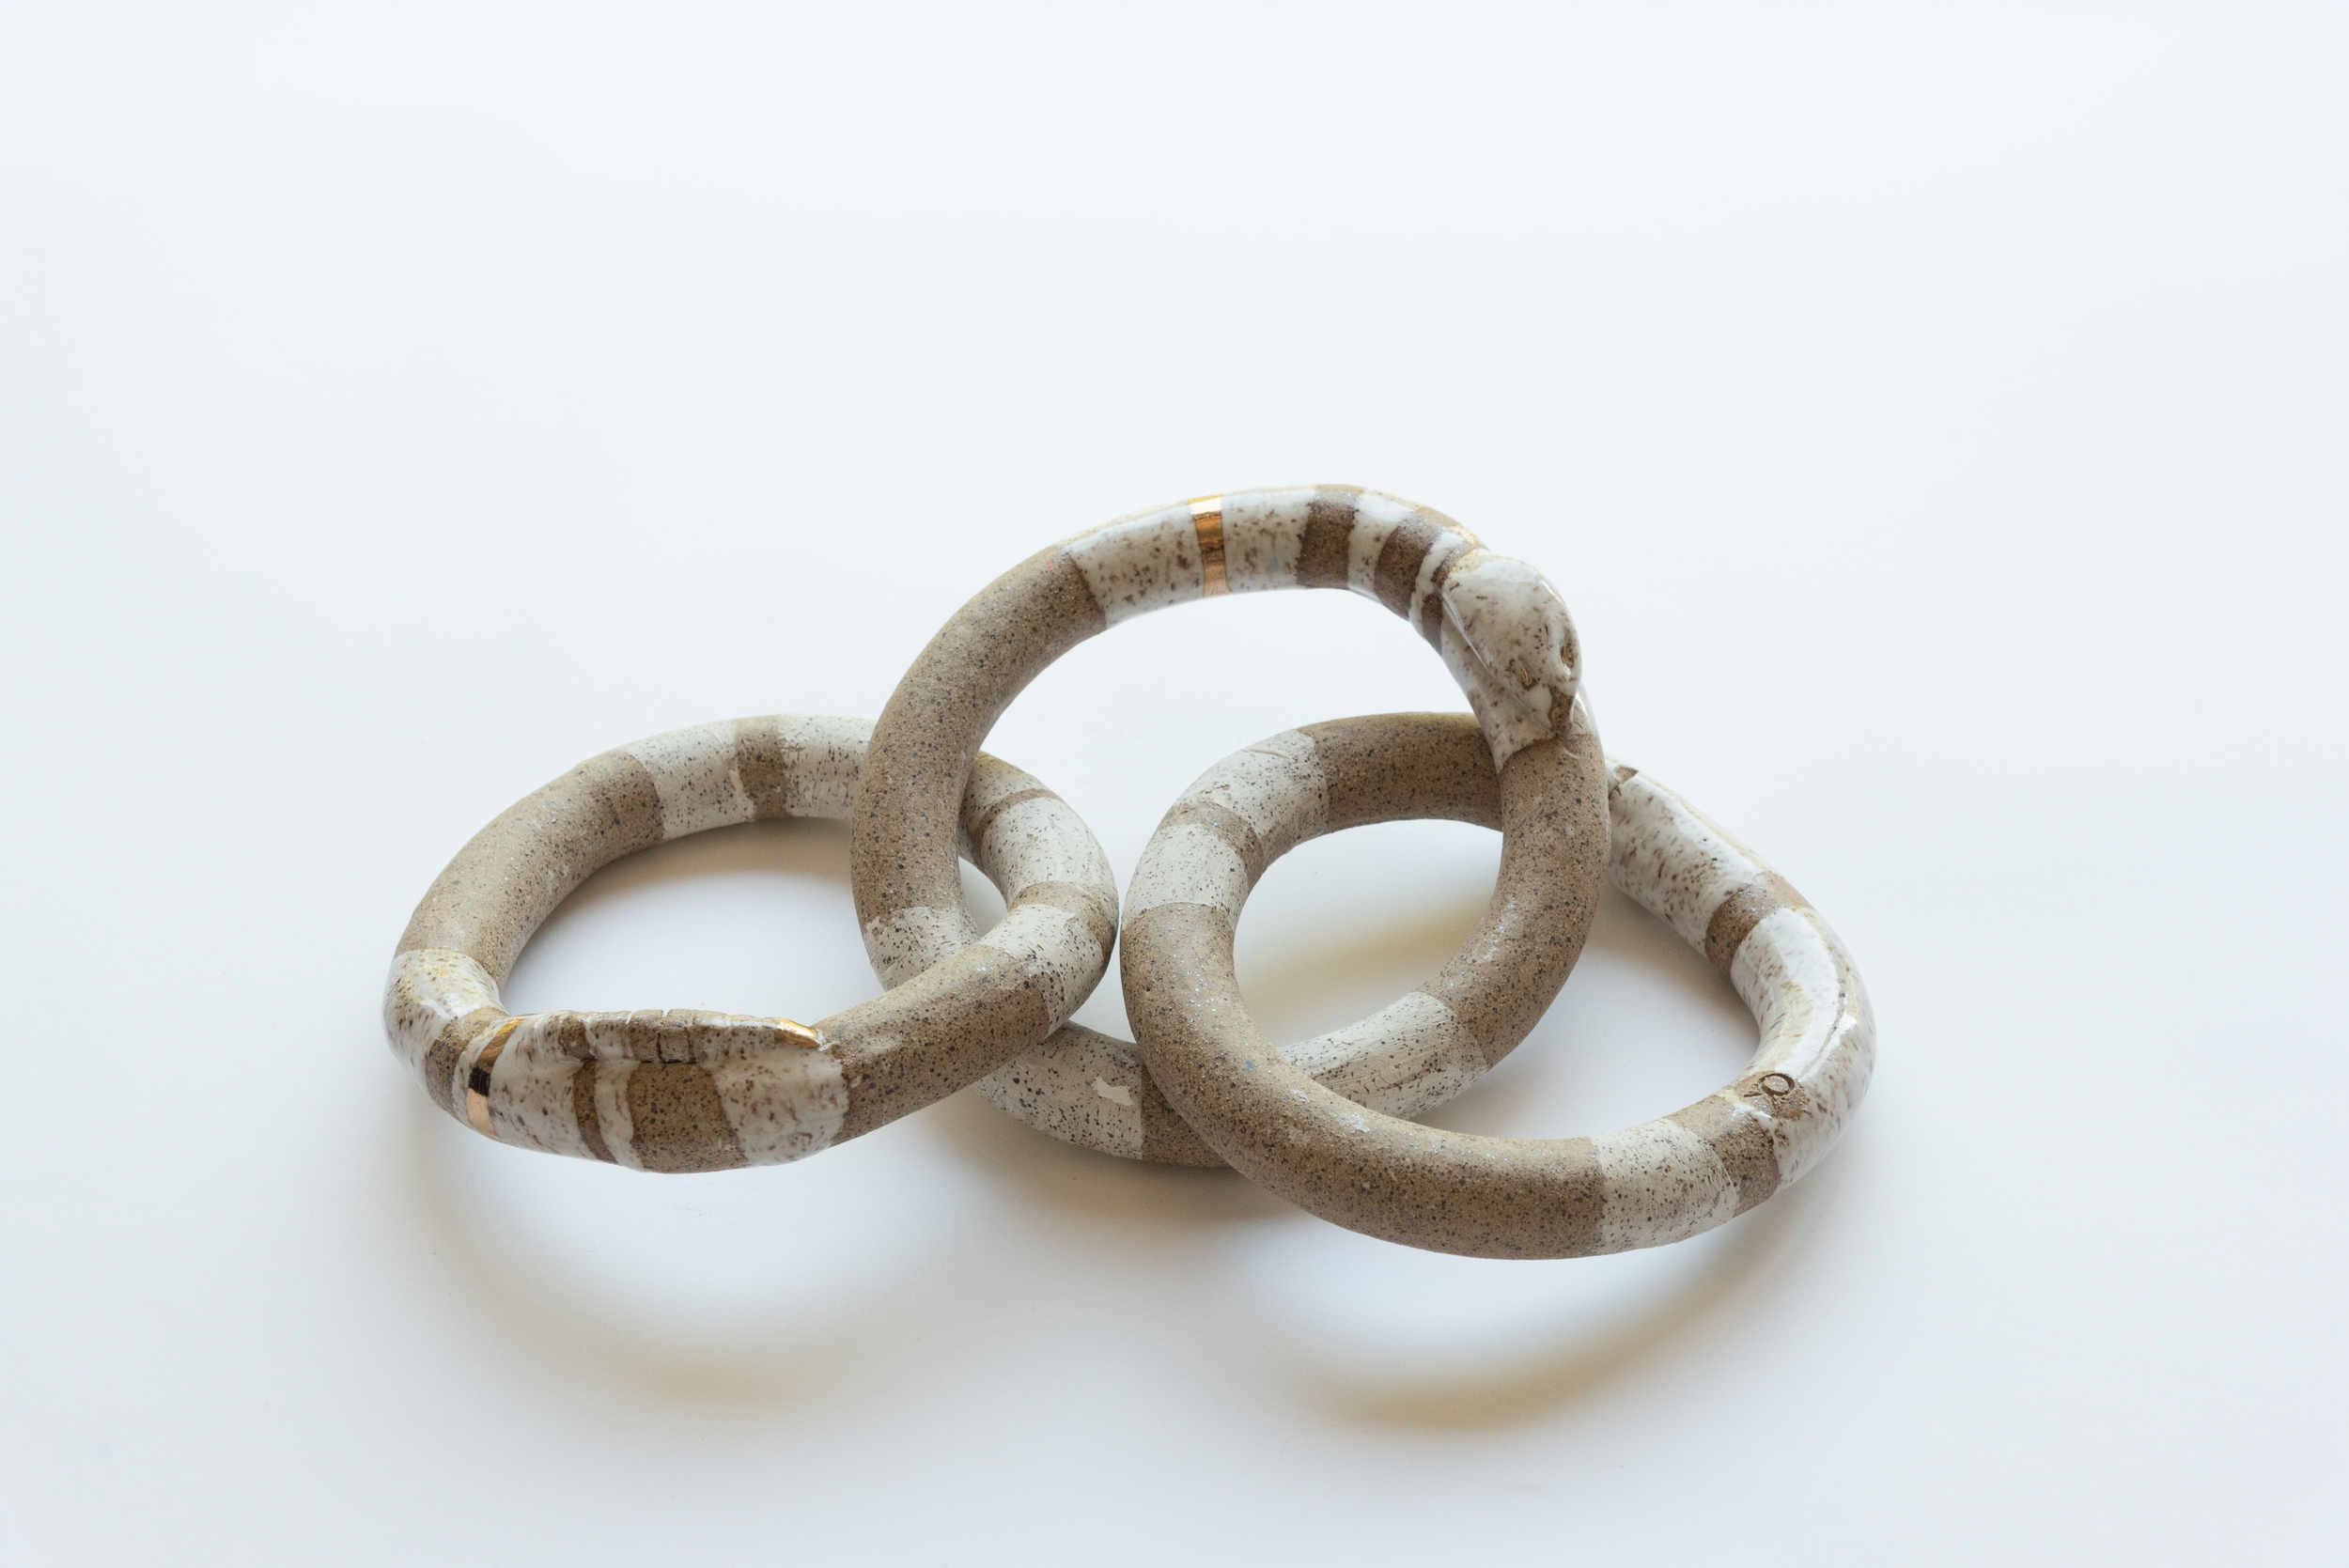 Ceramic Snake Chain (3 Links)